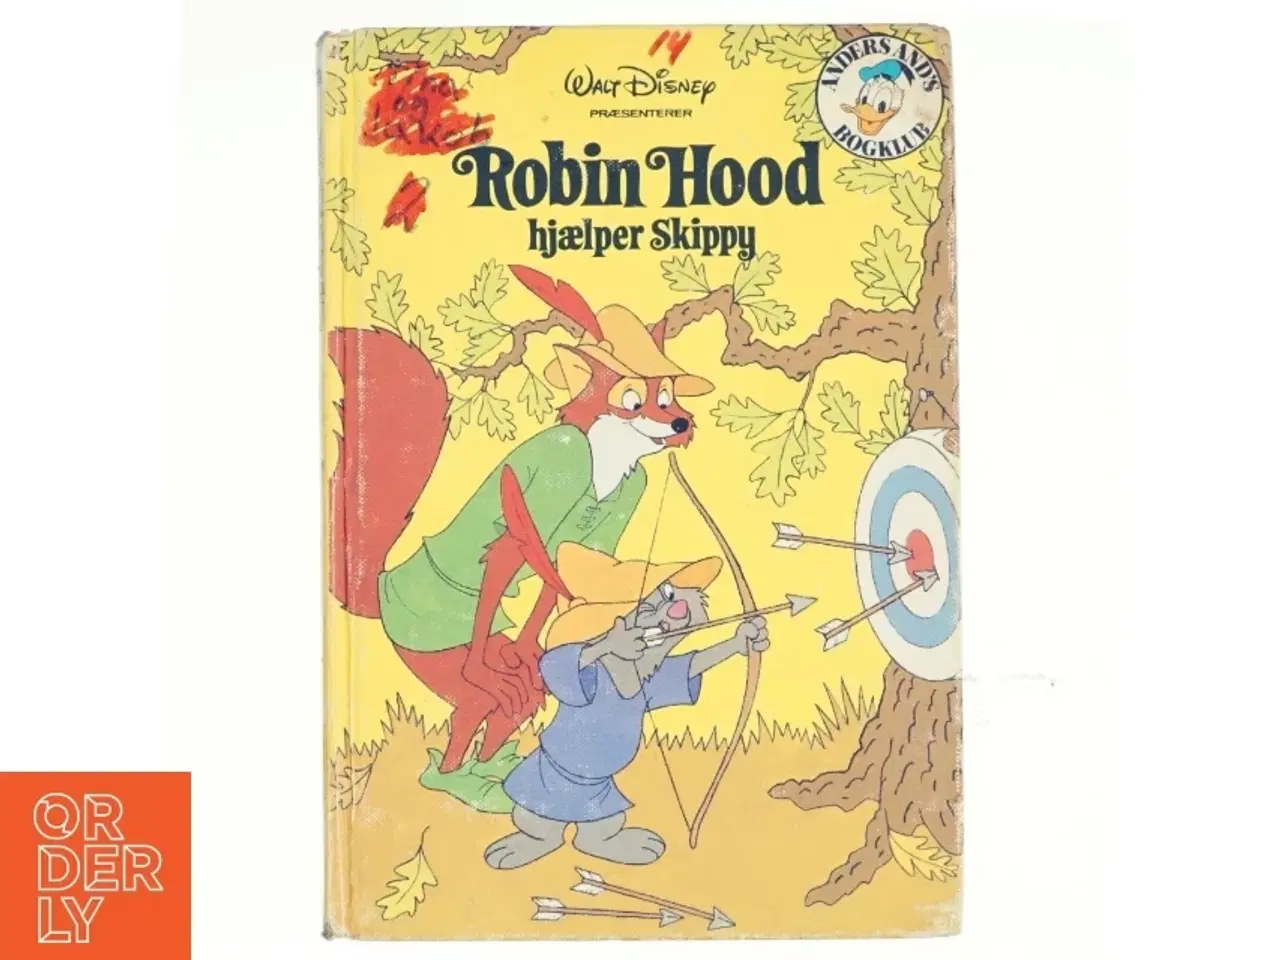 Billede 1 - Robin Hood hjælper skippy fra Walt Disney